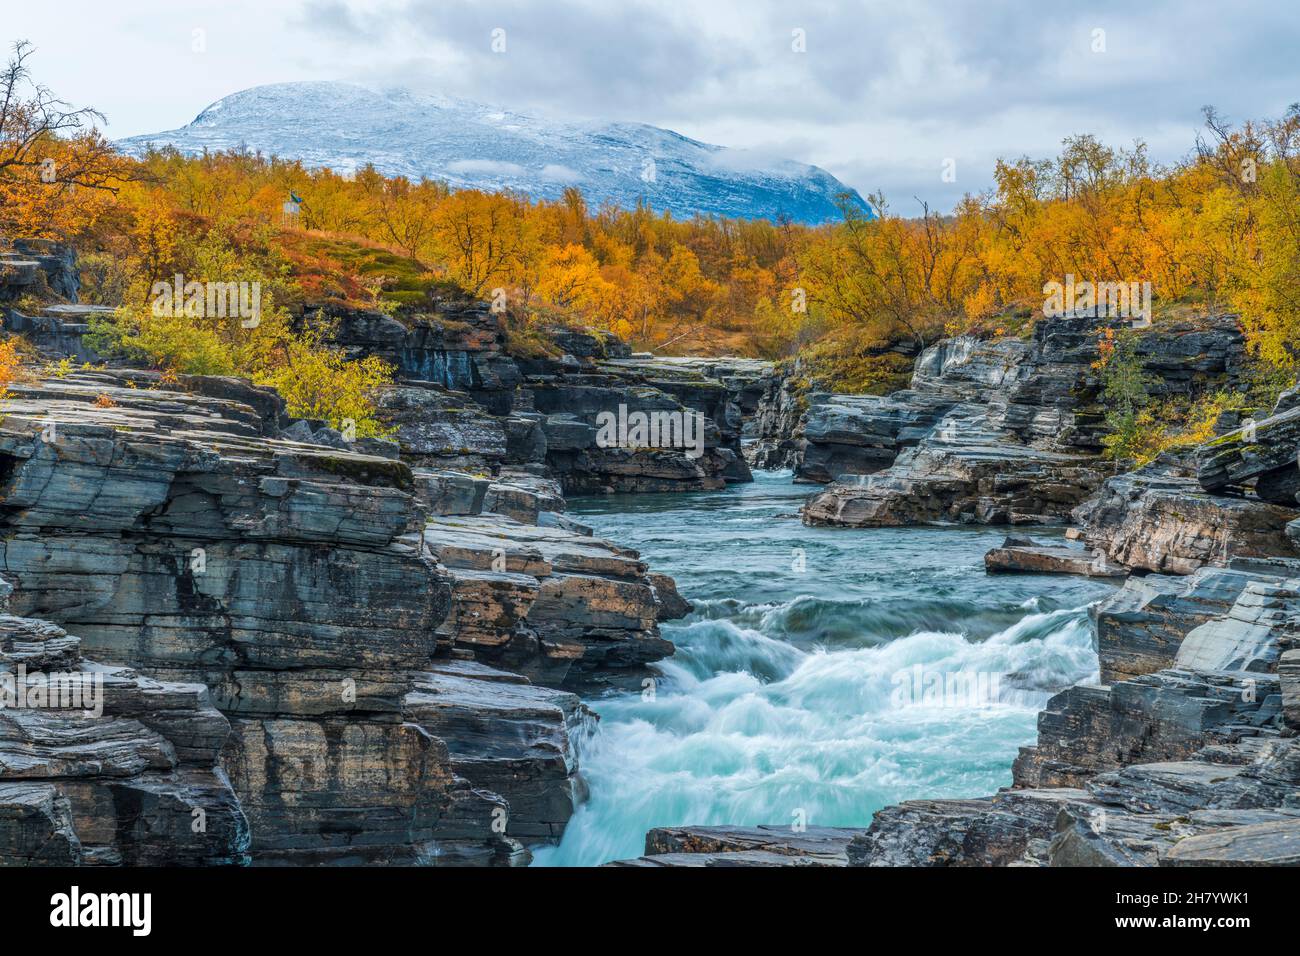 Abiskko jokk in der Herbstsaison mit türkisfarbenem Wasser, gelben Birken und Berg im Hintergrund mit Schnee, Abisko, Schwedisch Lappland, Schweden Stockfoto